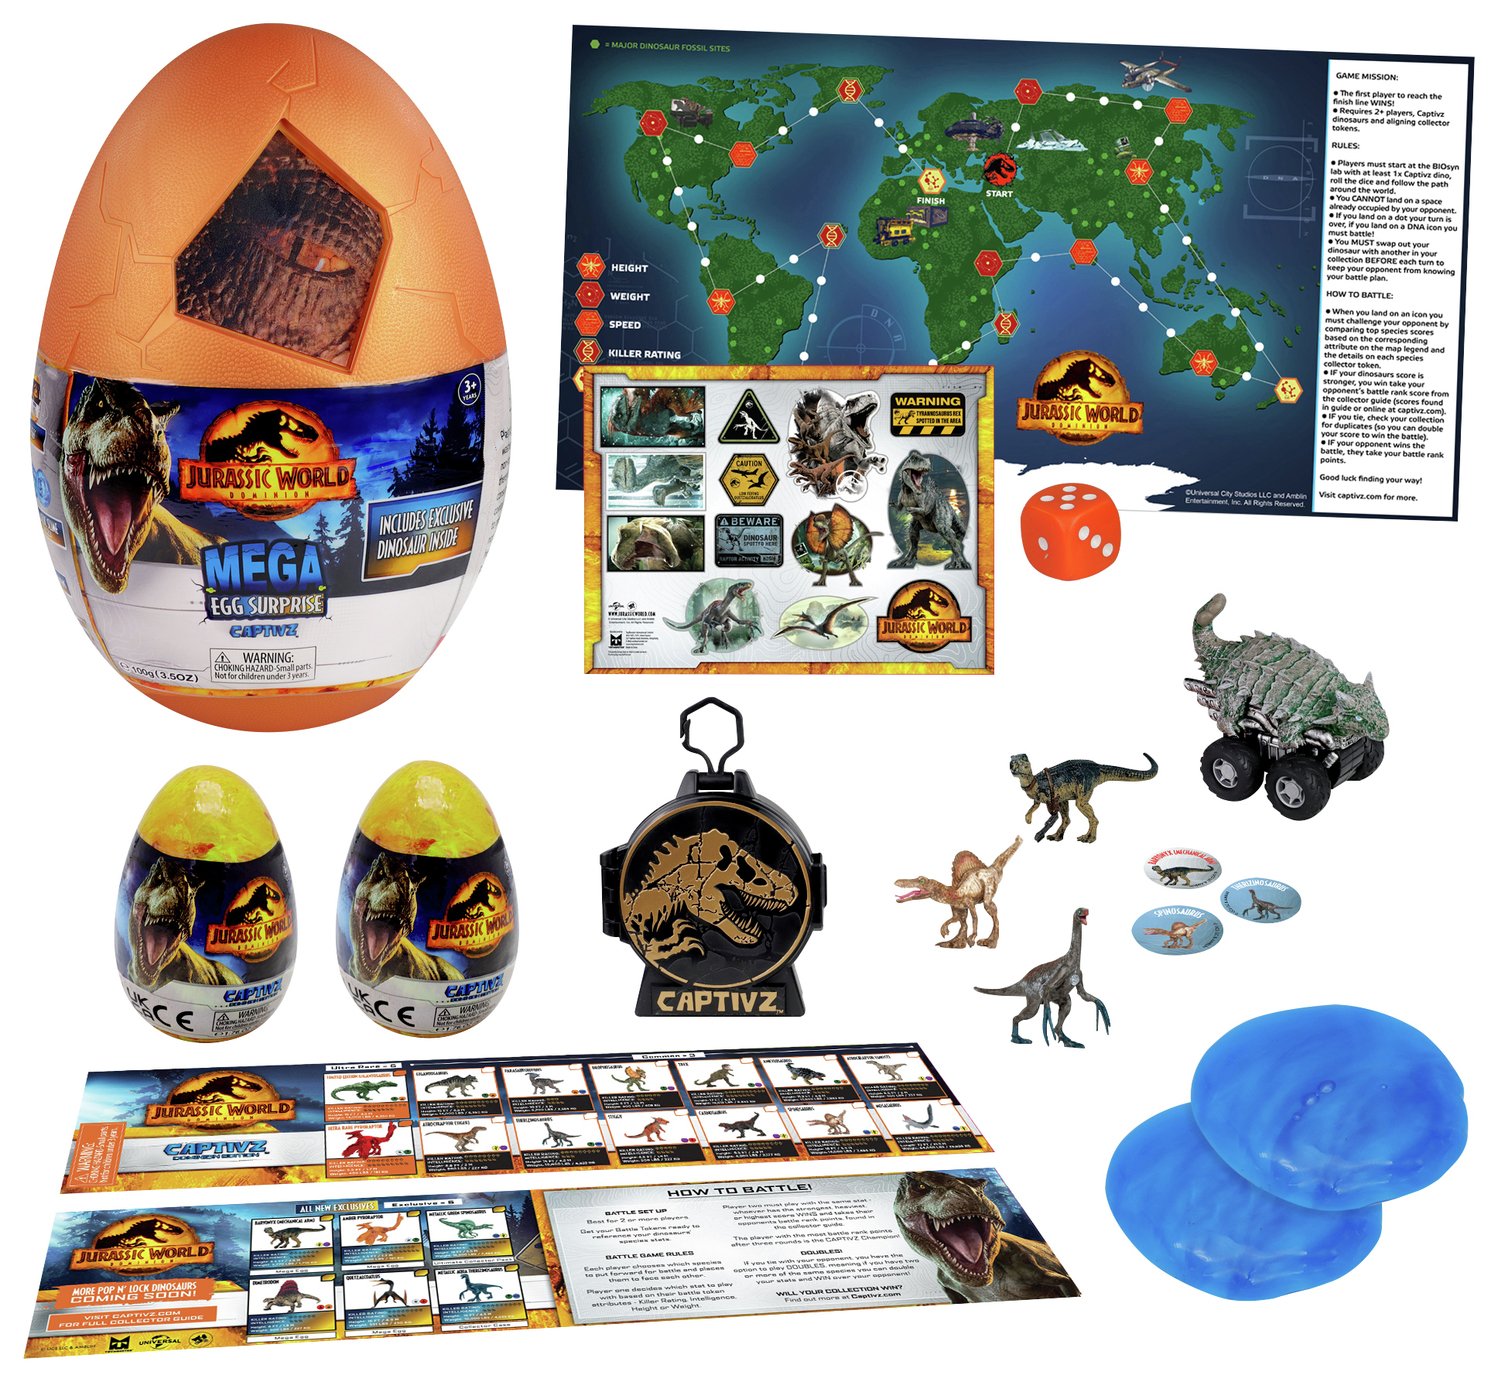 Jurassic World Captivz Dominion Mega Egg review